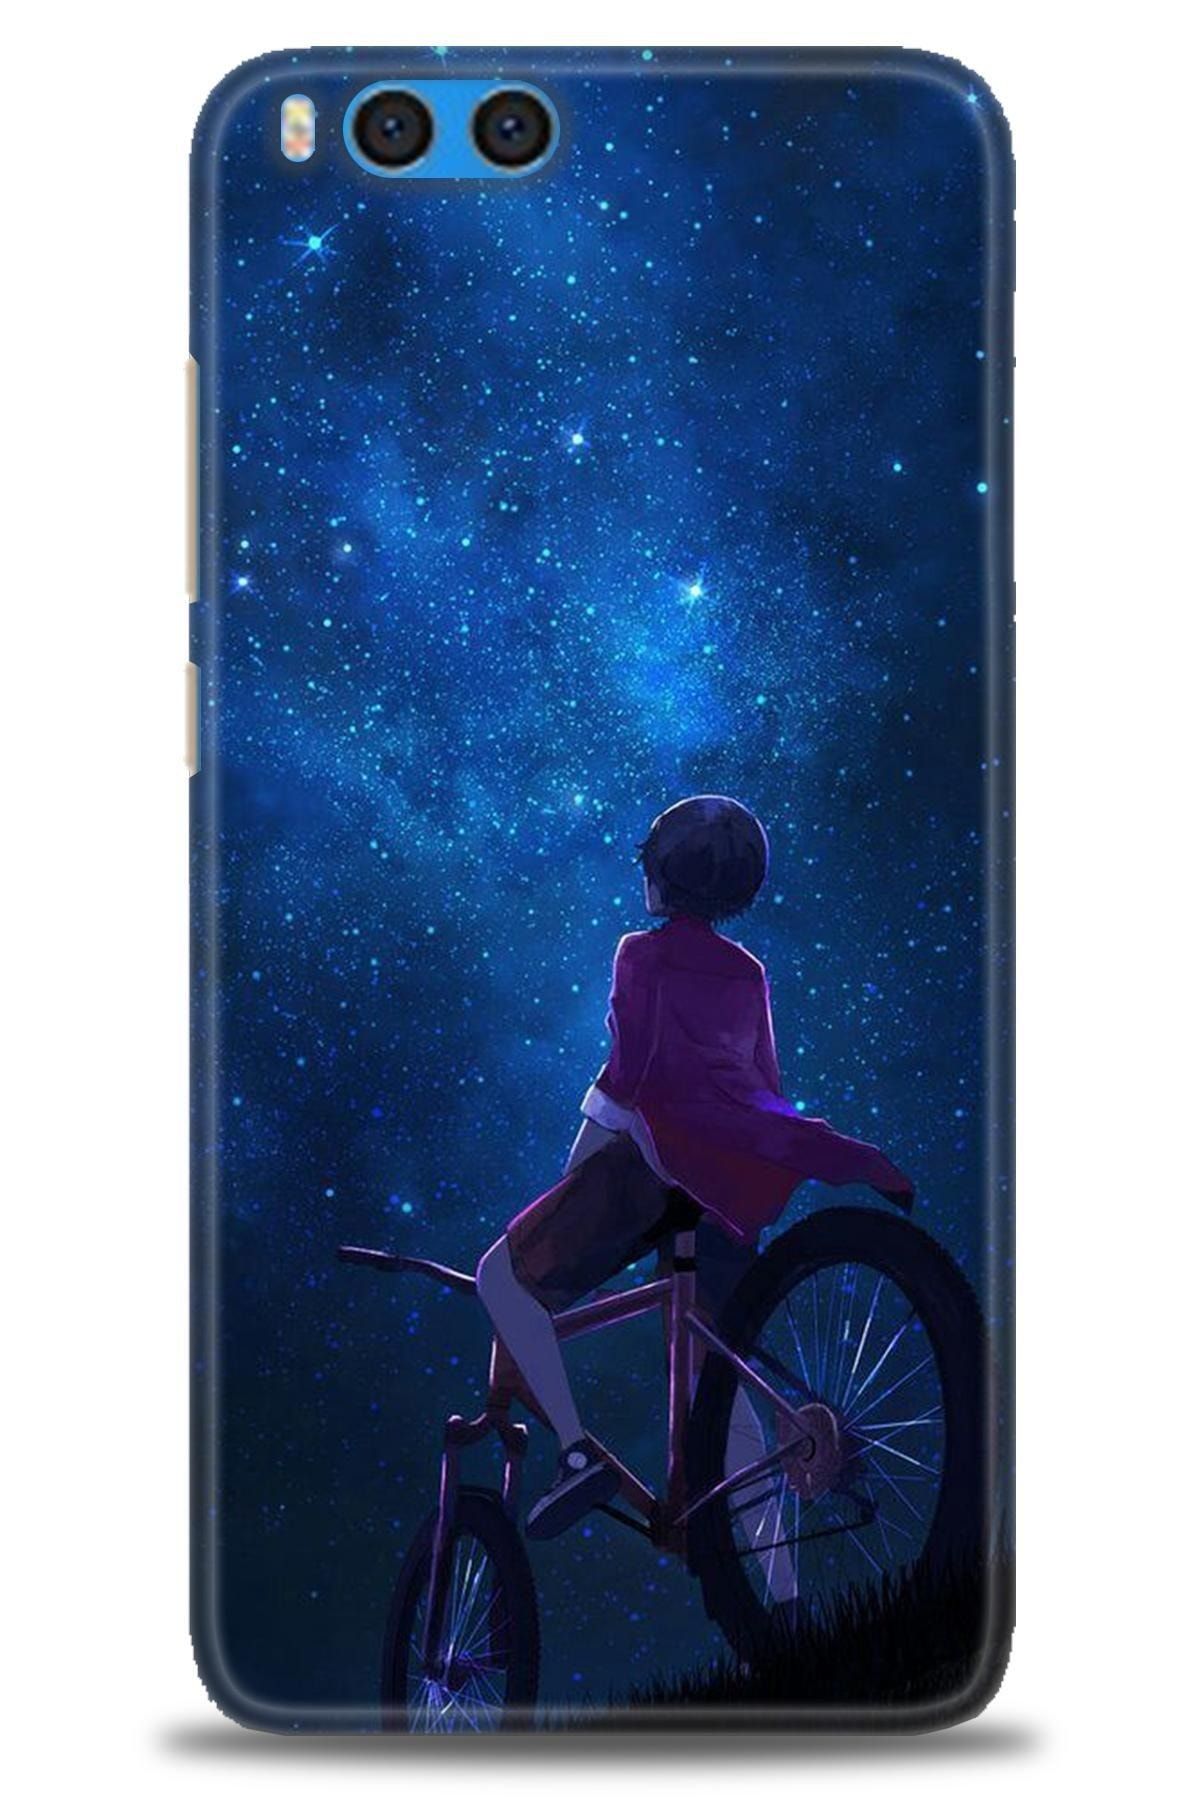 Turkiyecepaksesuar Xiaomi Mi Note 3 Kılıf Hd Baskılı Kılıf - Bisikletli Çocuk + Nano Micro Ekran Koruyucu